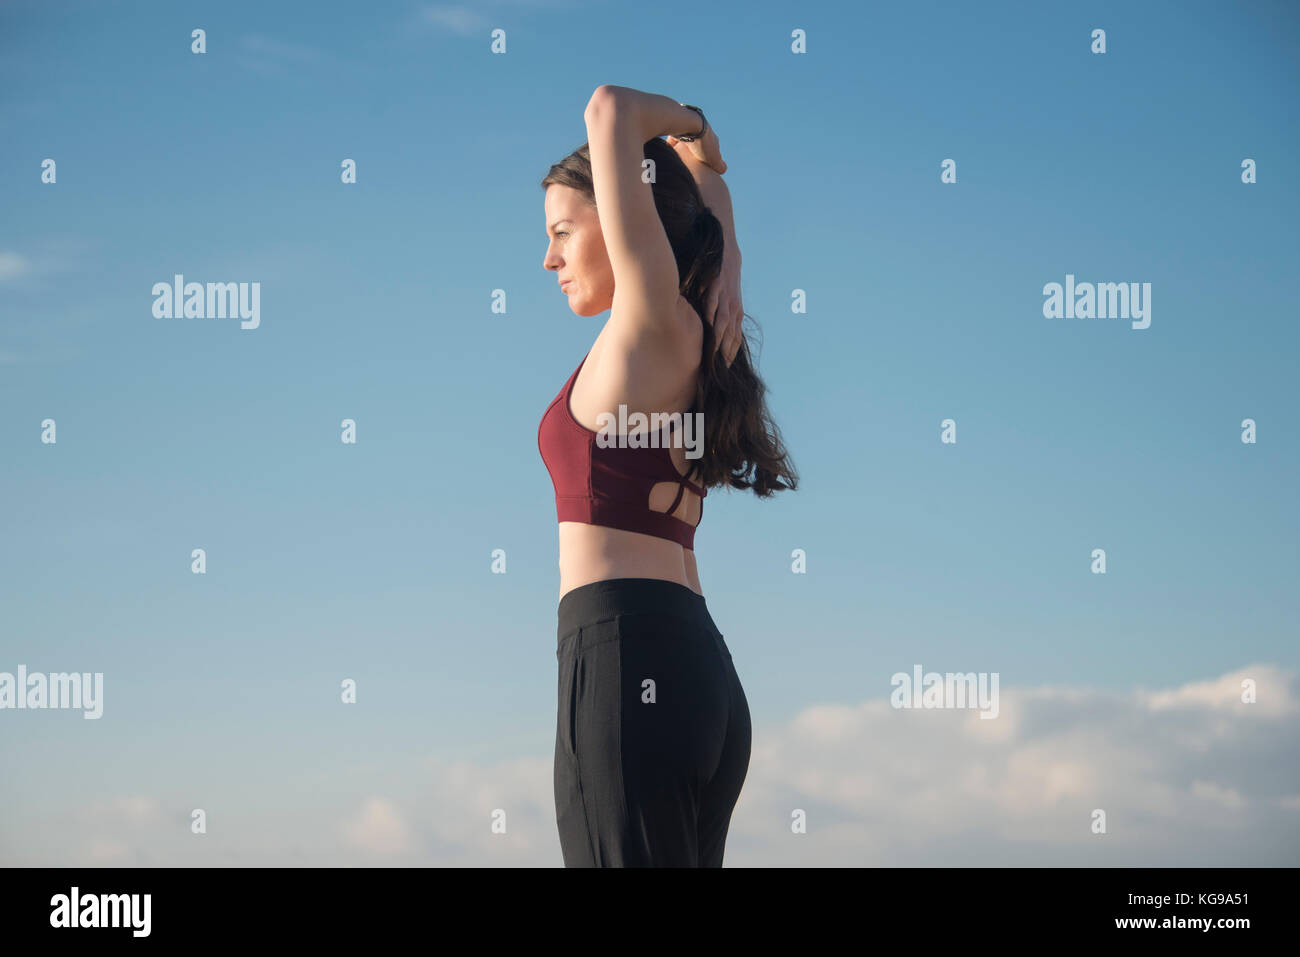 Femme sportive portant un soutien-gorge de sport faisant un bras s'étendent en dehors de garder l'ajustement. Banque D'Images